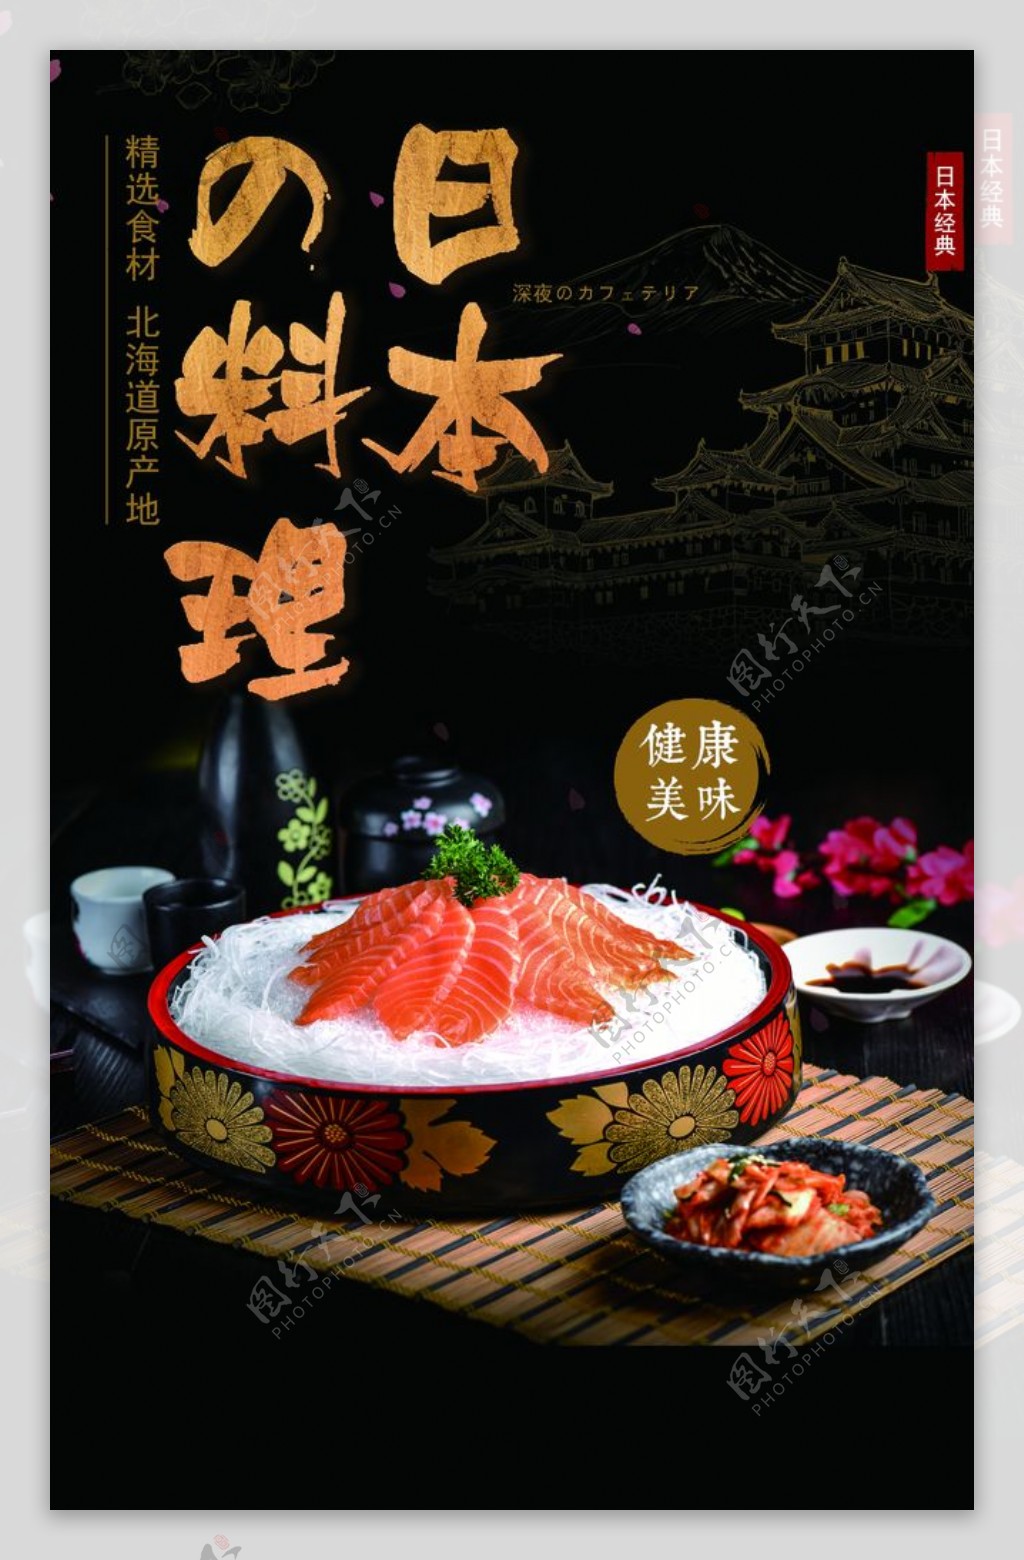 日本料理美食活动宣传海报素材图片